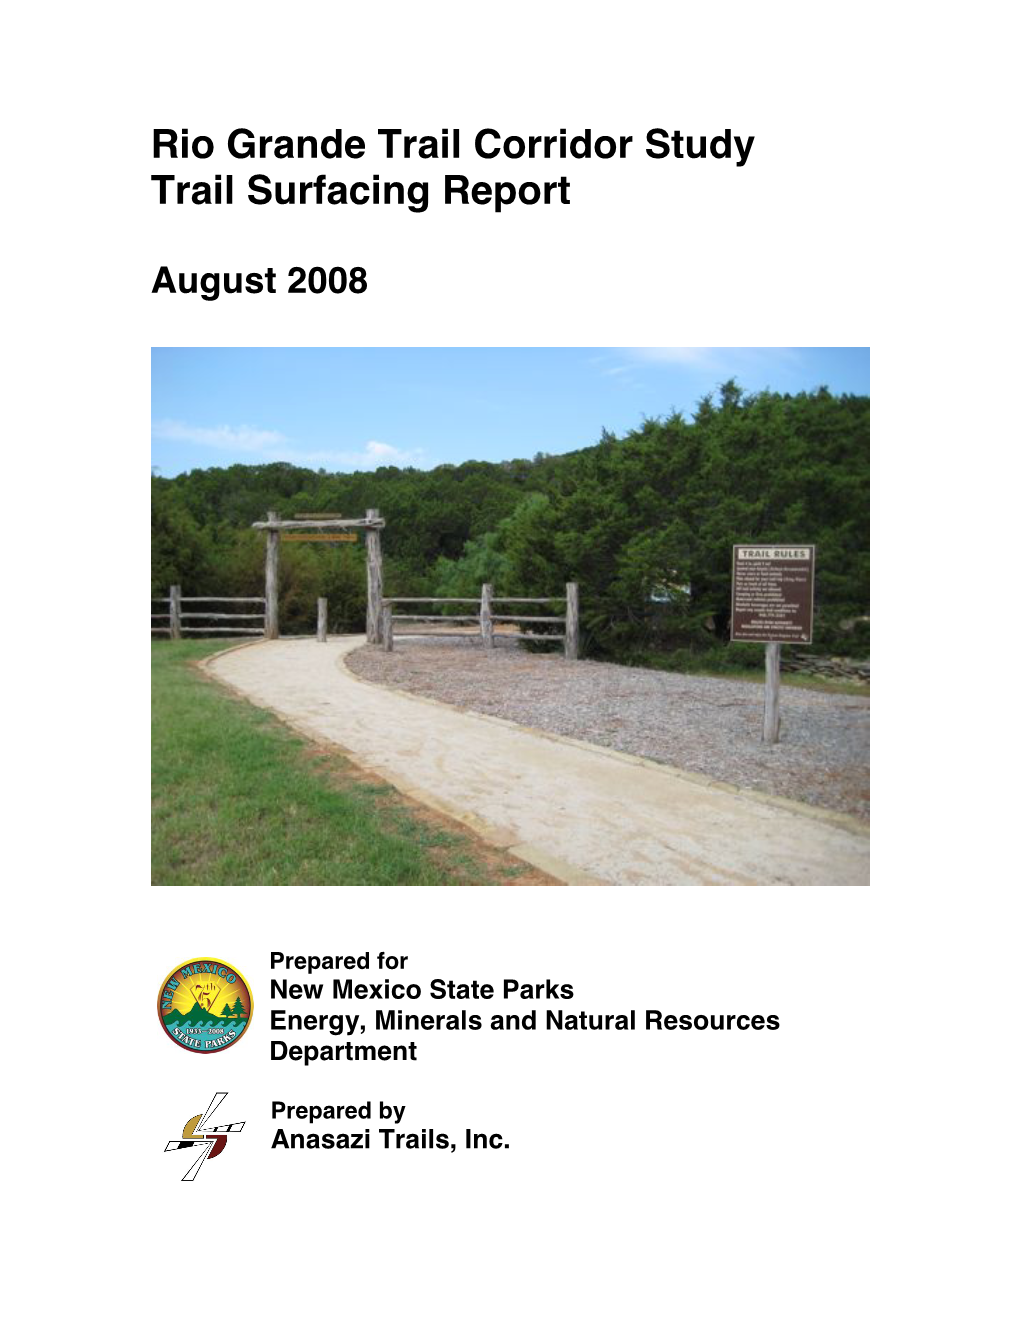 Rio Grande Trail Corridor Study Trail Surfacing Report